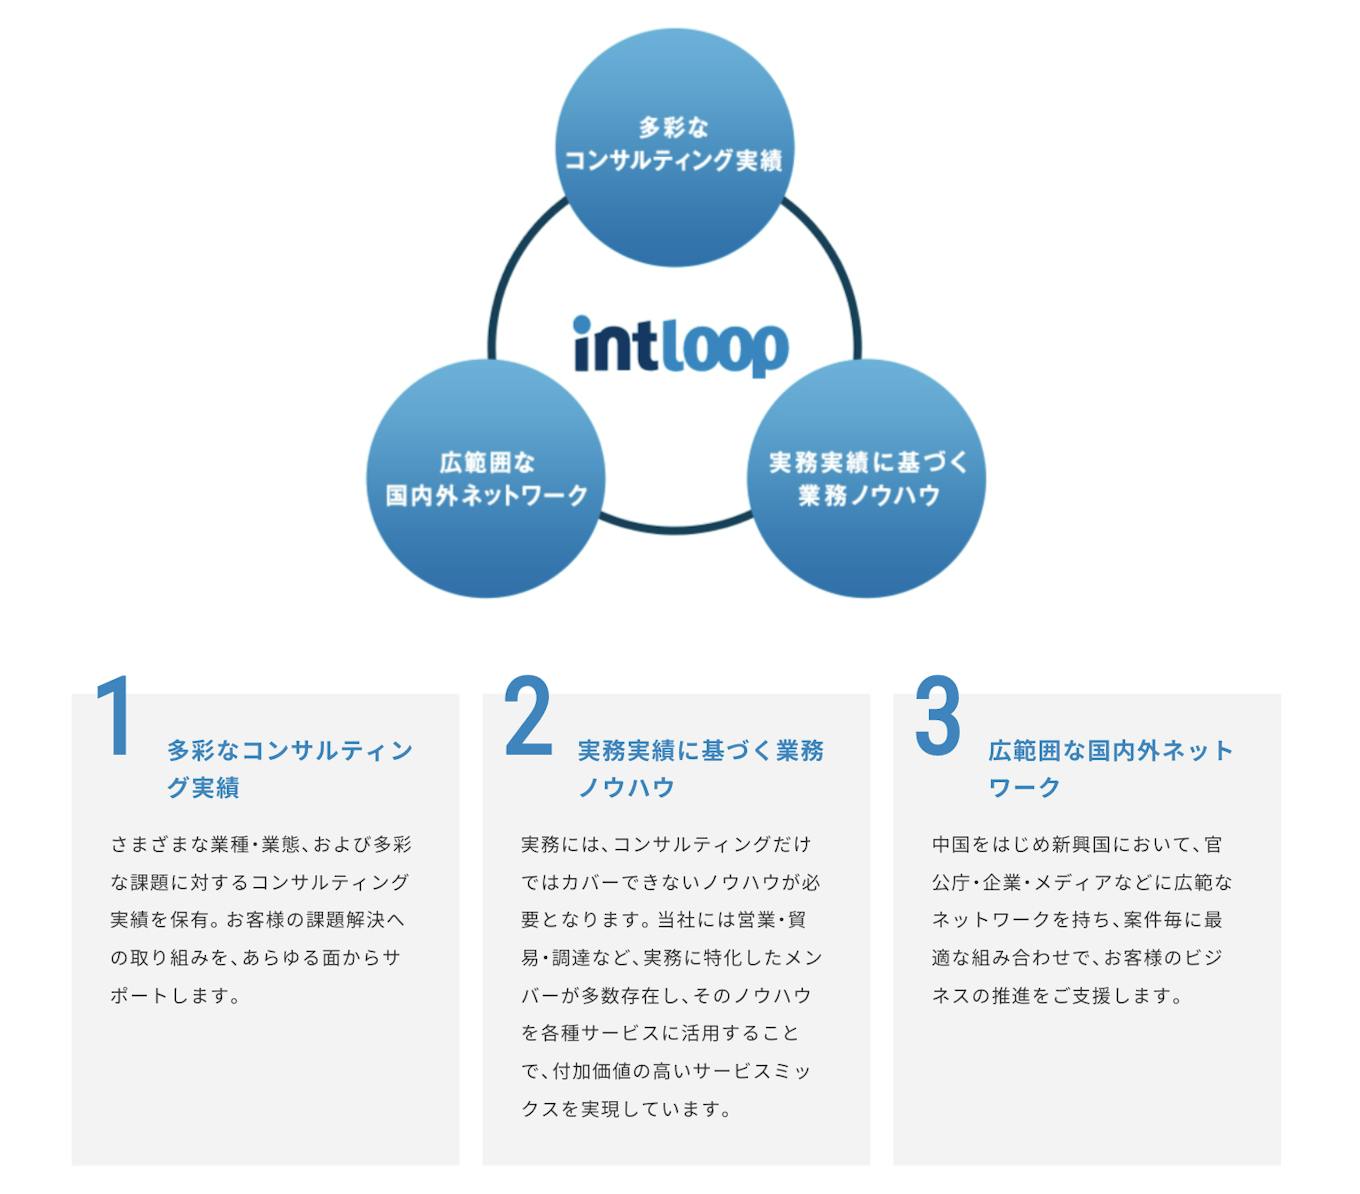 INTLOOPという社名は「Introduction」＋「Loop」を組み合わせた造語です。